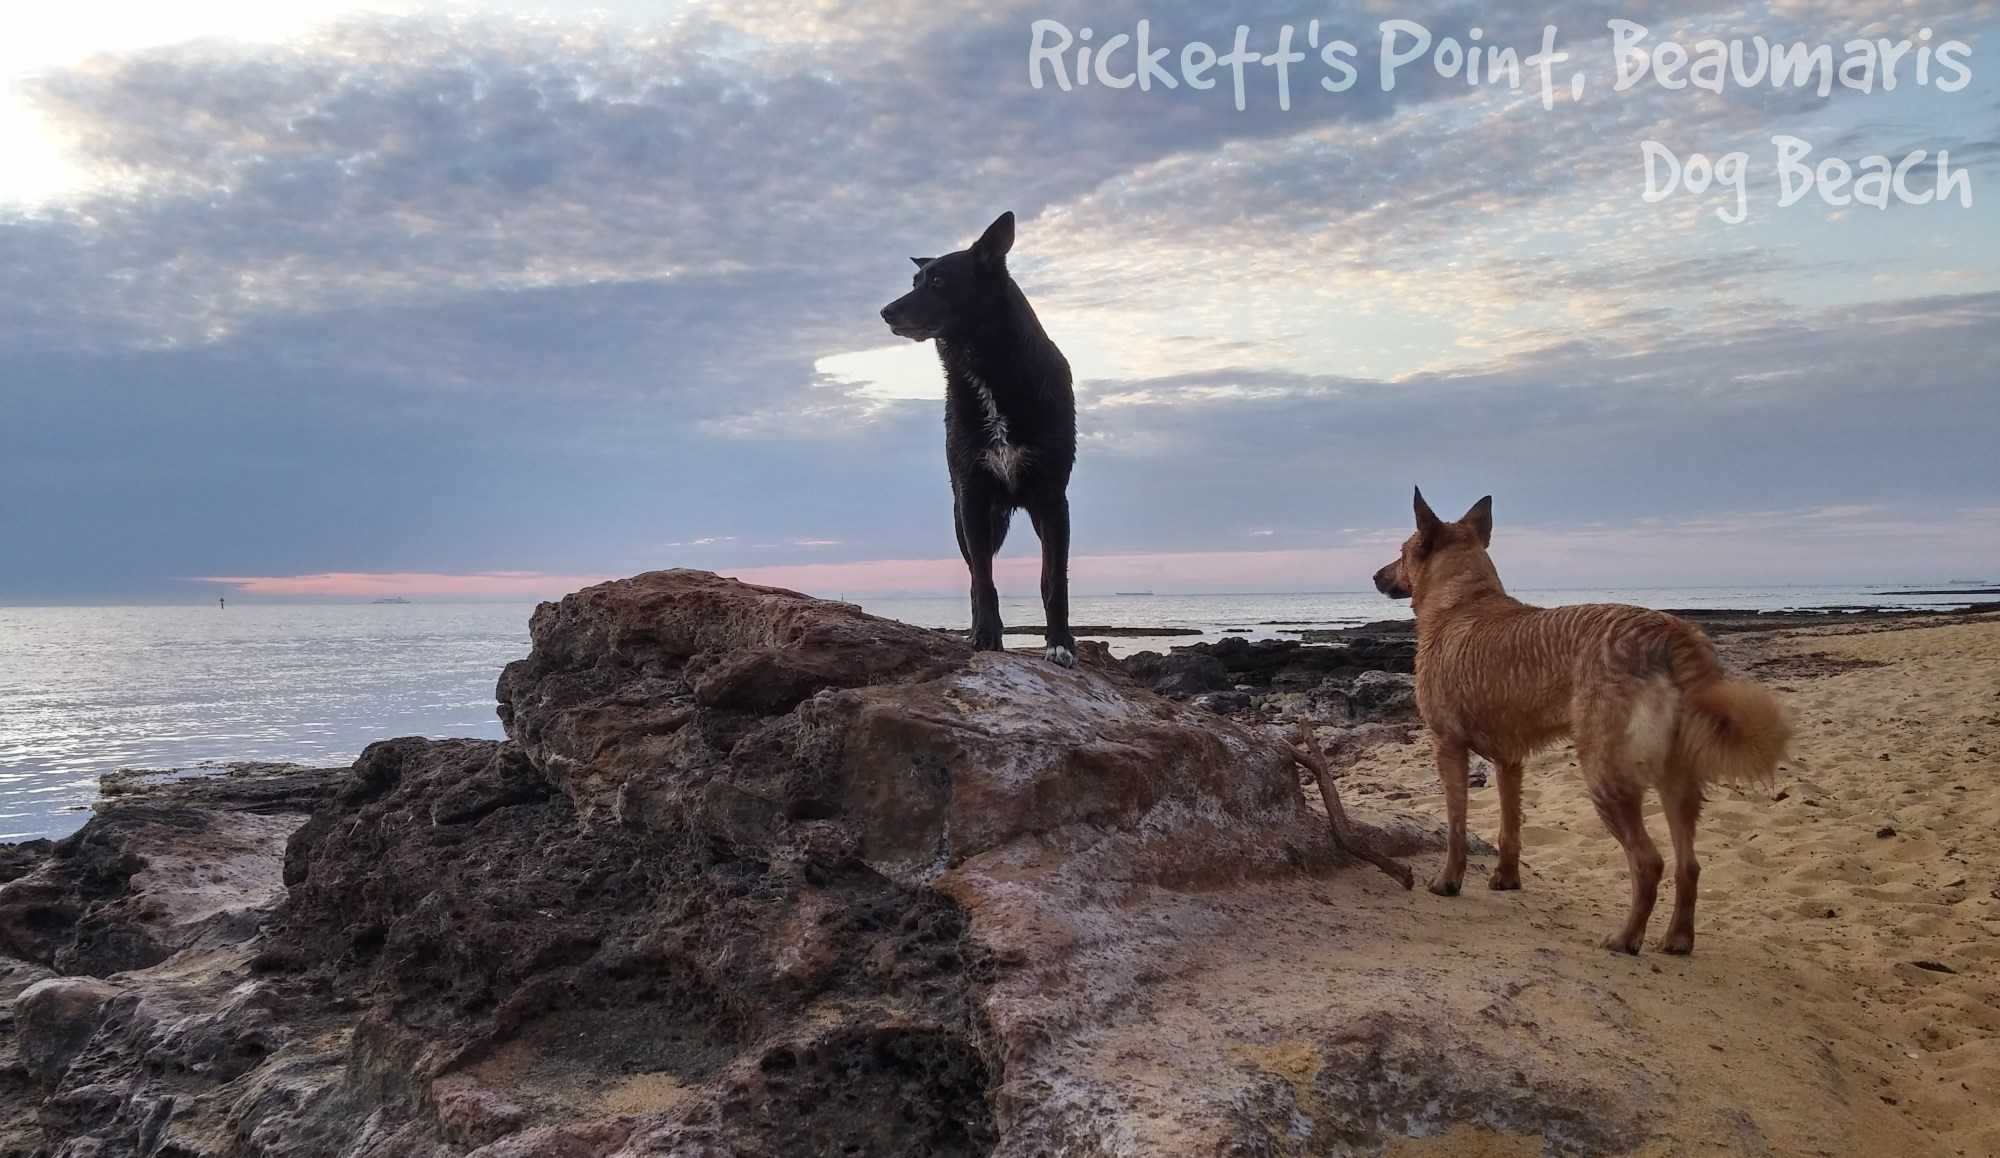 Ricketts Point Beach, Beaumaris - Dog Beach